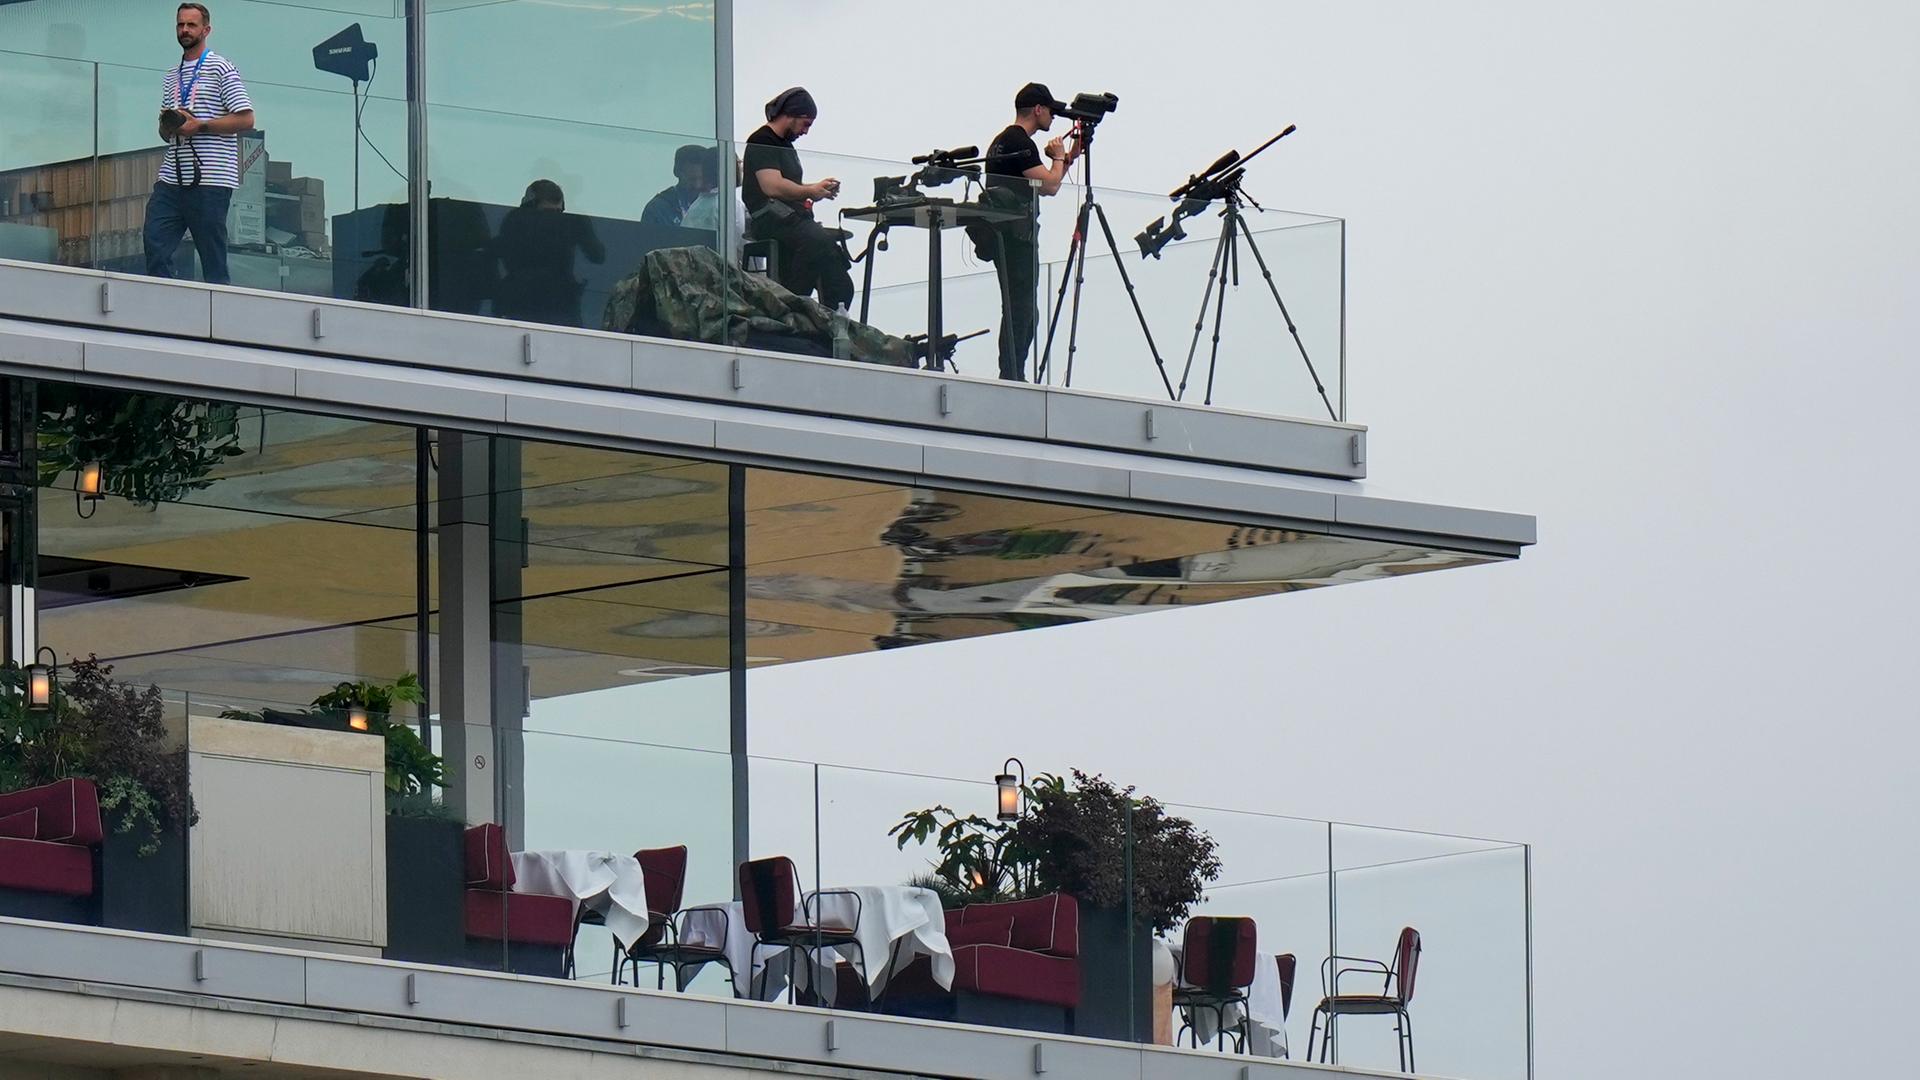 Sicherheitskräfte mit Scharfschützengewehr auf einem Balkon mit Blick auf die Seine vor der Eröffnung der Olympischen Spielen 2024 in Paris